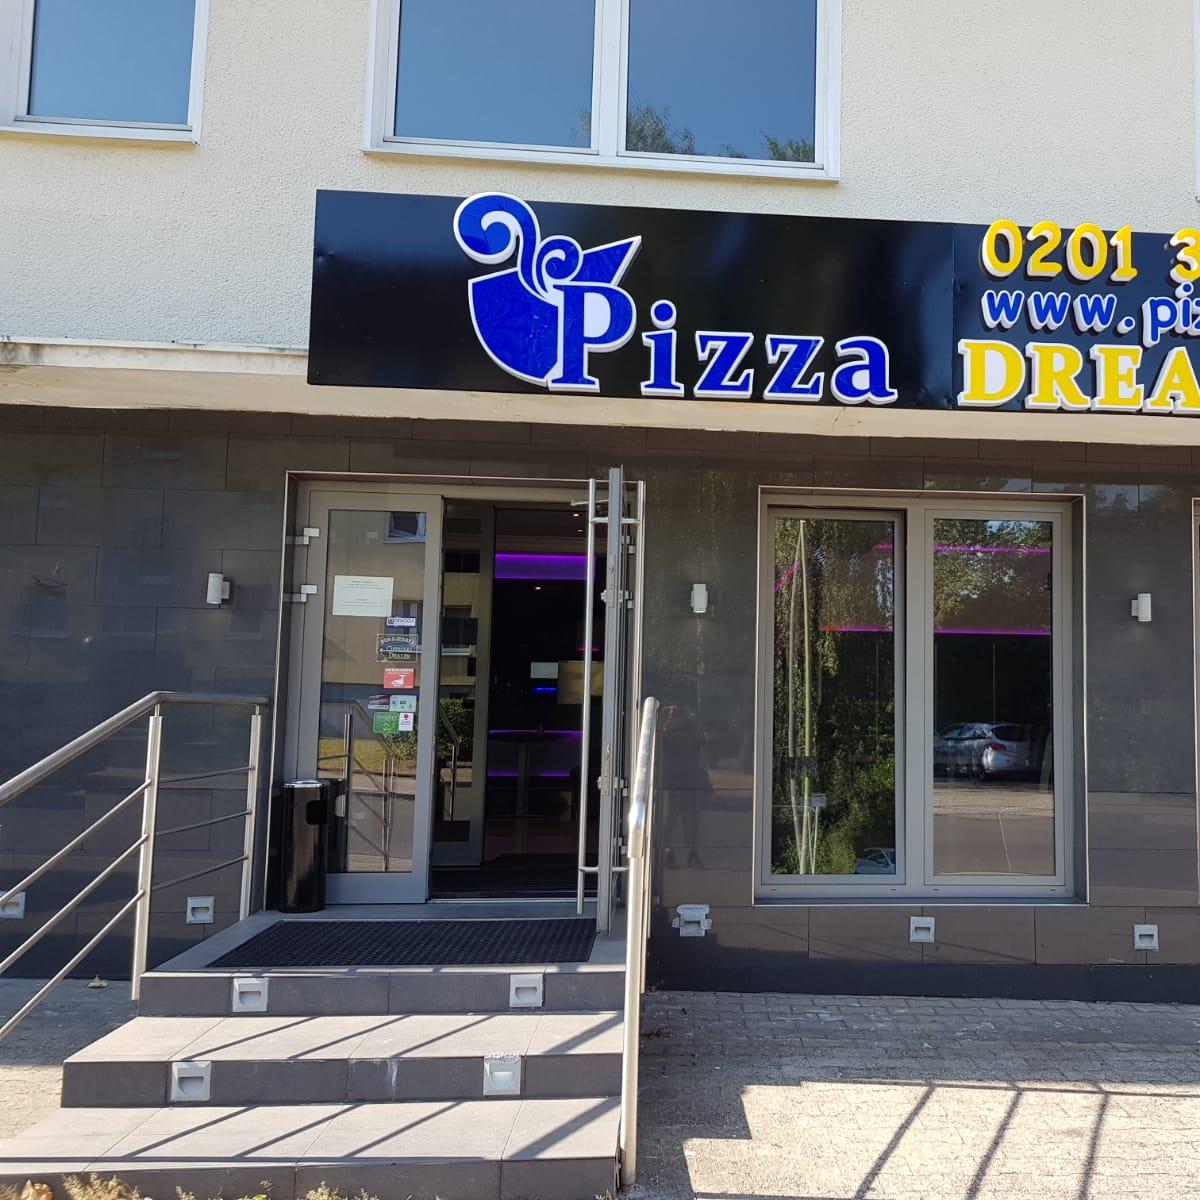 Restaurant "Pizza Dream Kray" in Essen